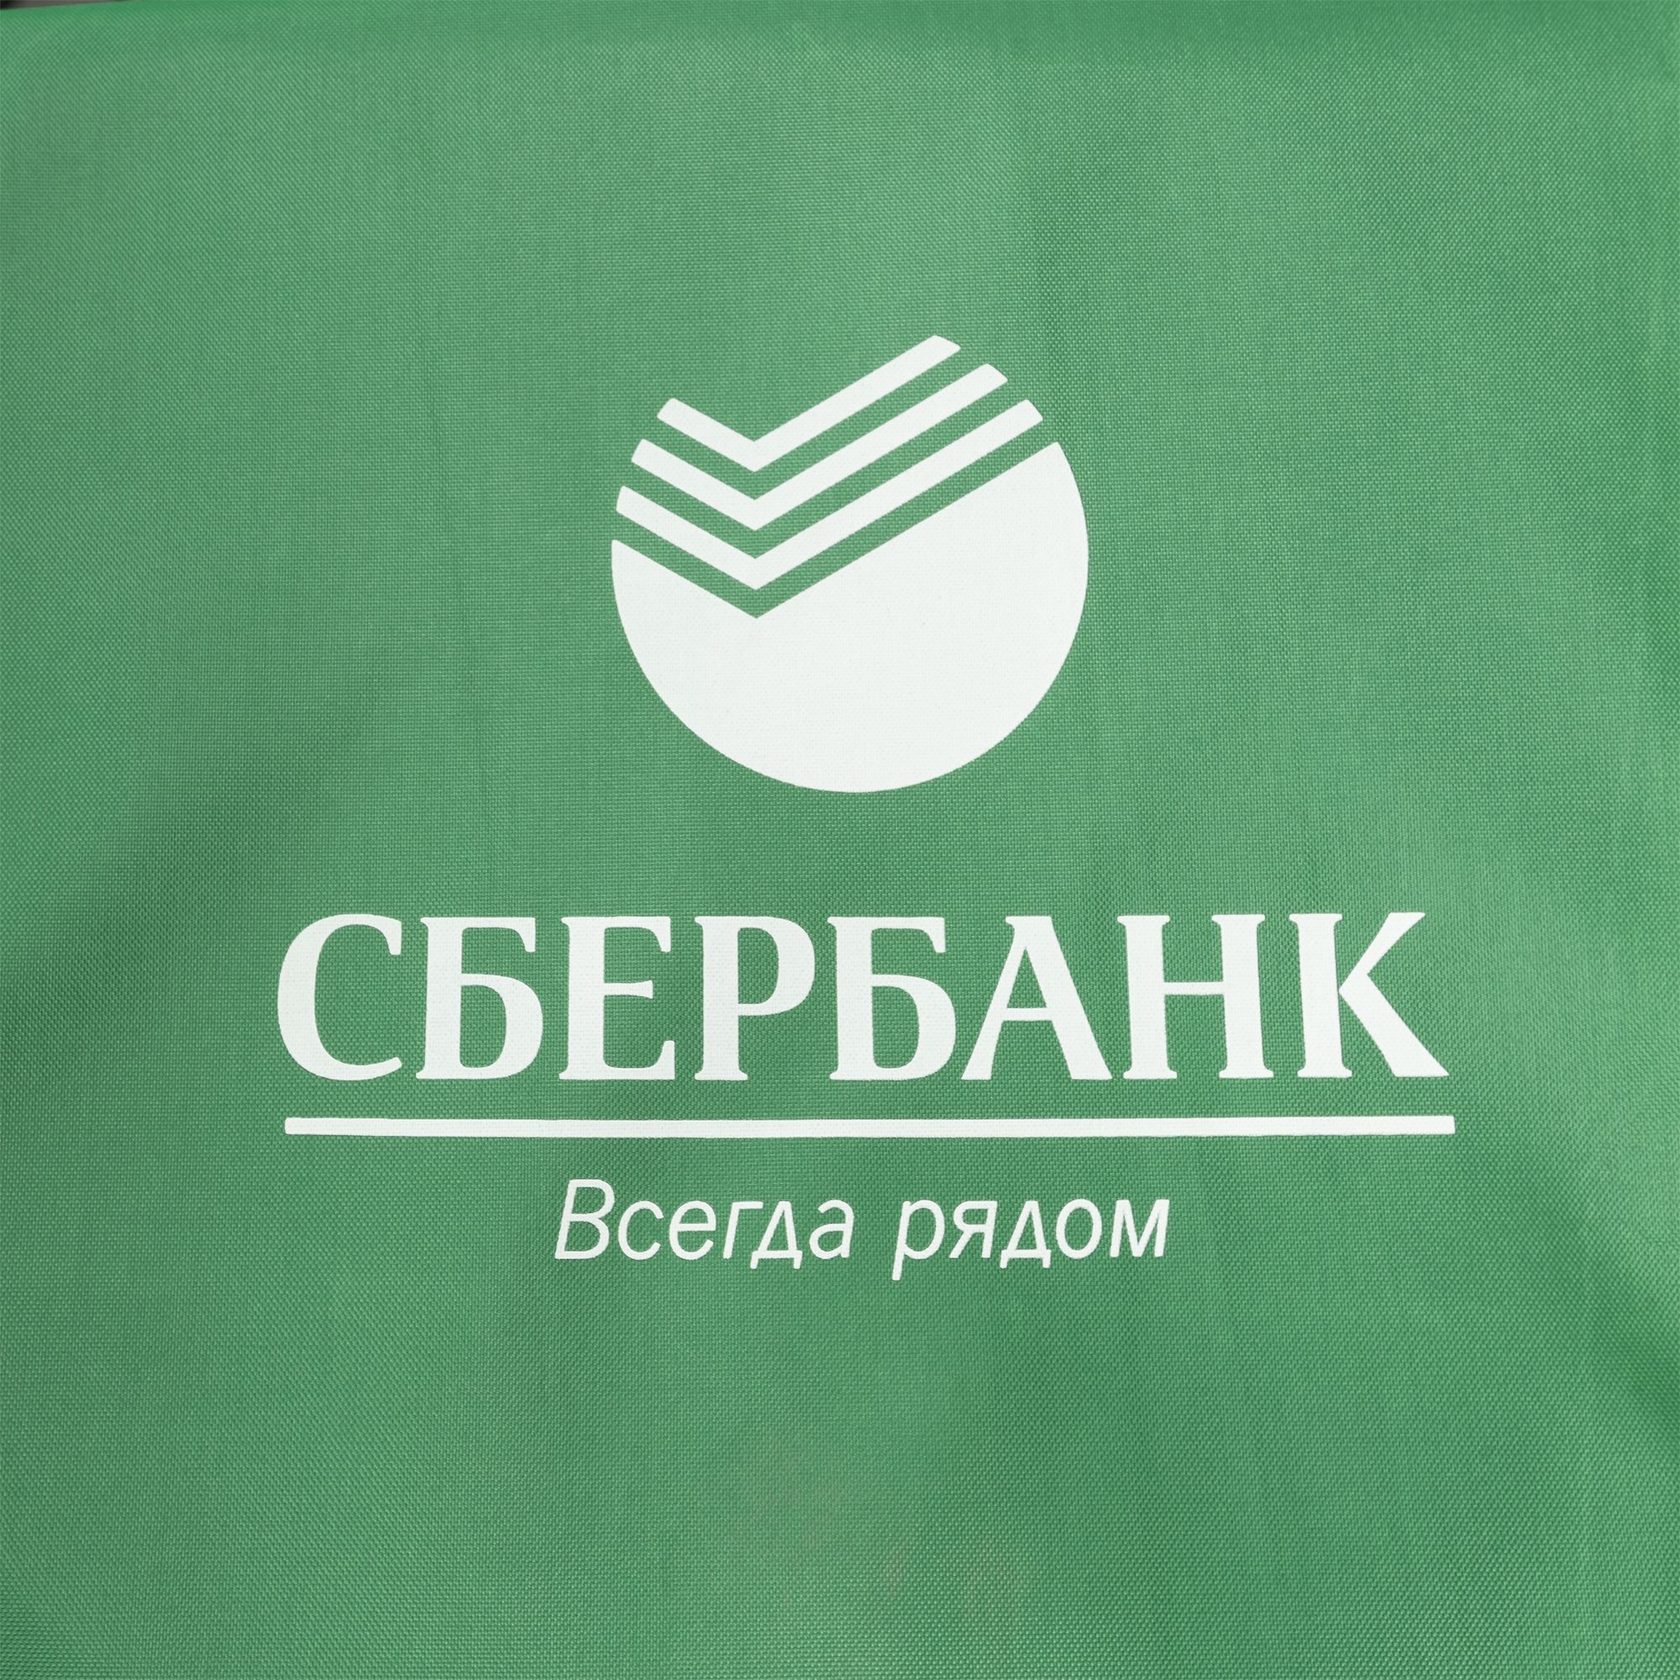 Логотип Сбербанка 2019